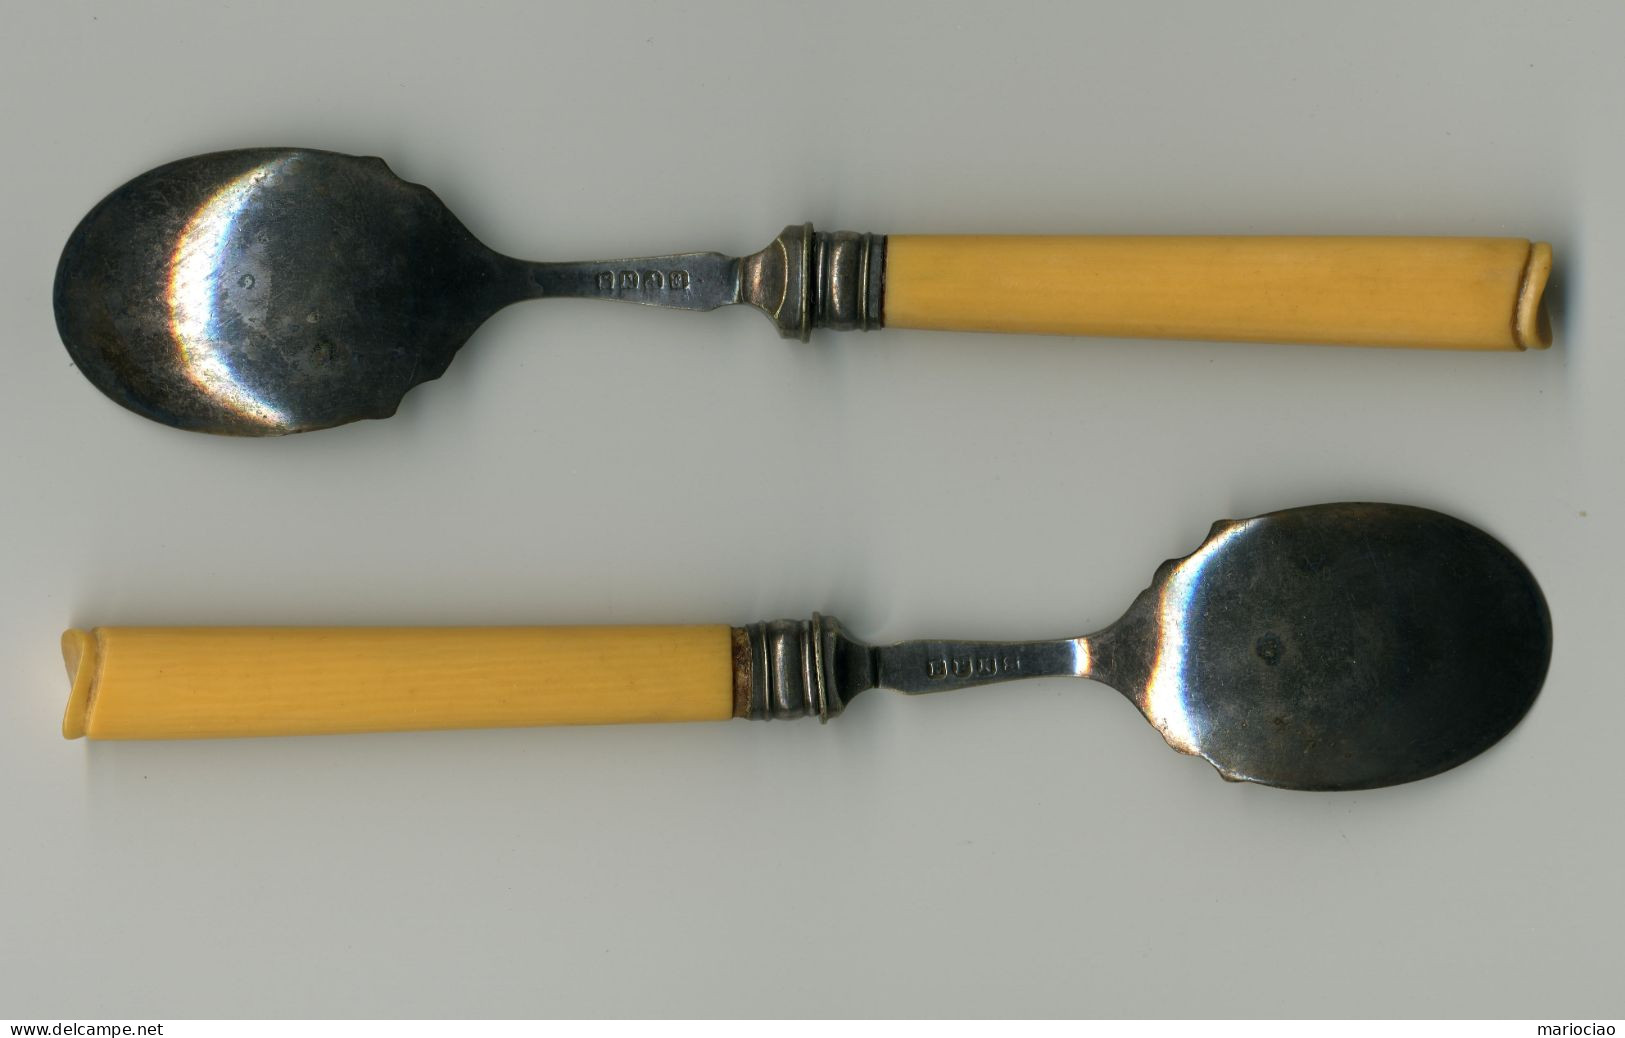 # Cucchiai Da Tè, Scatola Originale -Cuillères à Thé, Boîte Originale -Tea Spoons, Original Box - Silverware